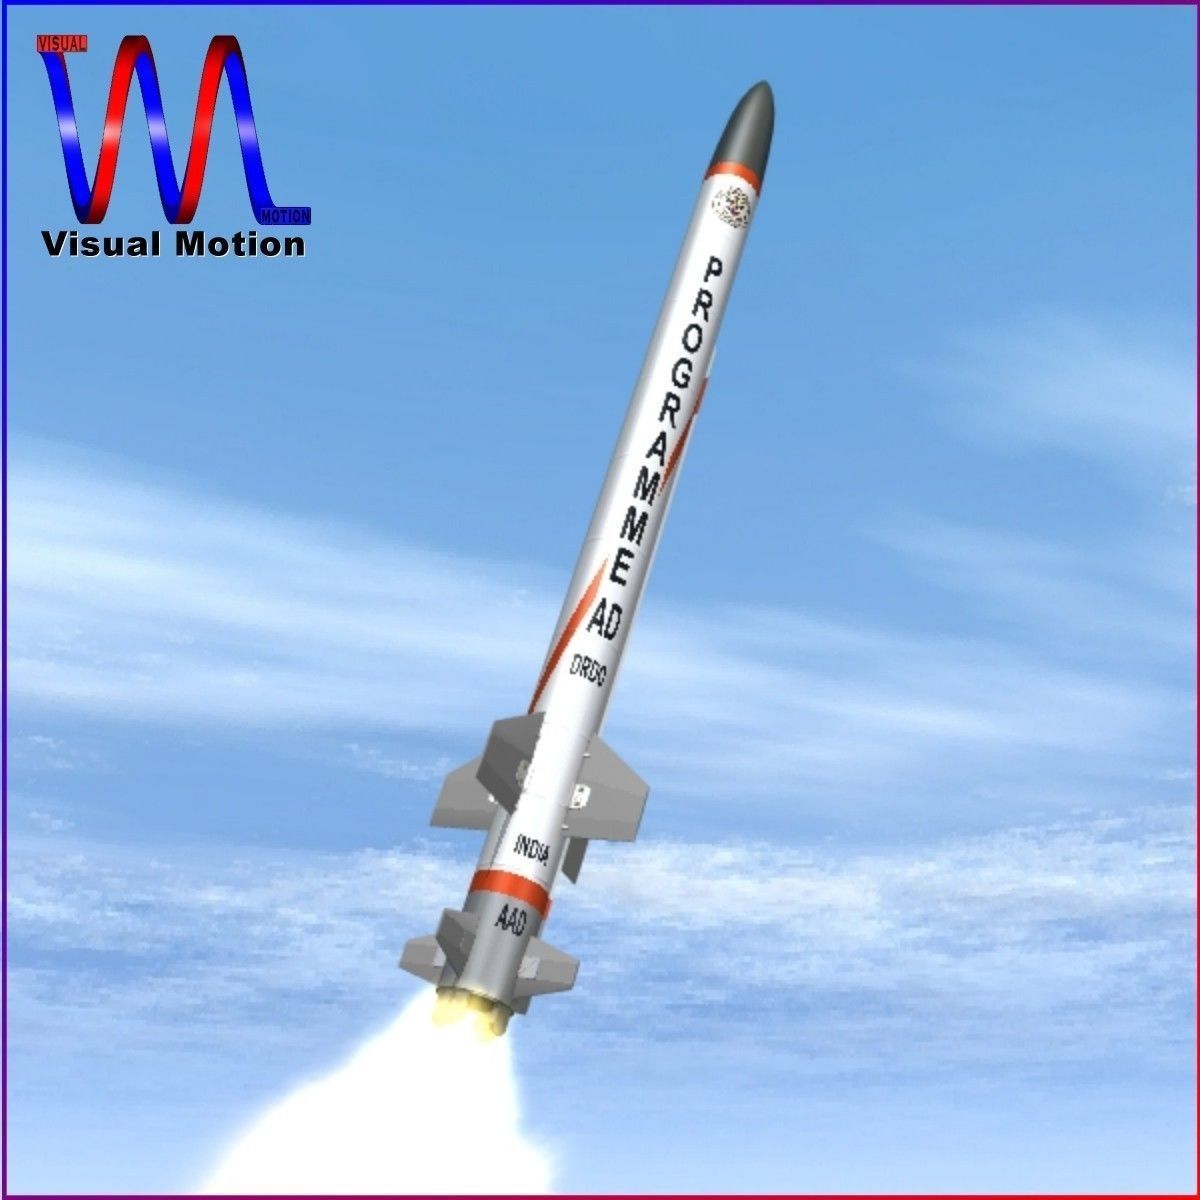 aad-missile-3d-model-low-poly-obj-3ds-fbx-dxf-blend-dae.jpg